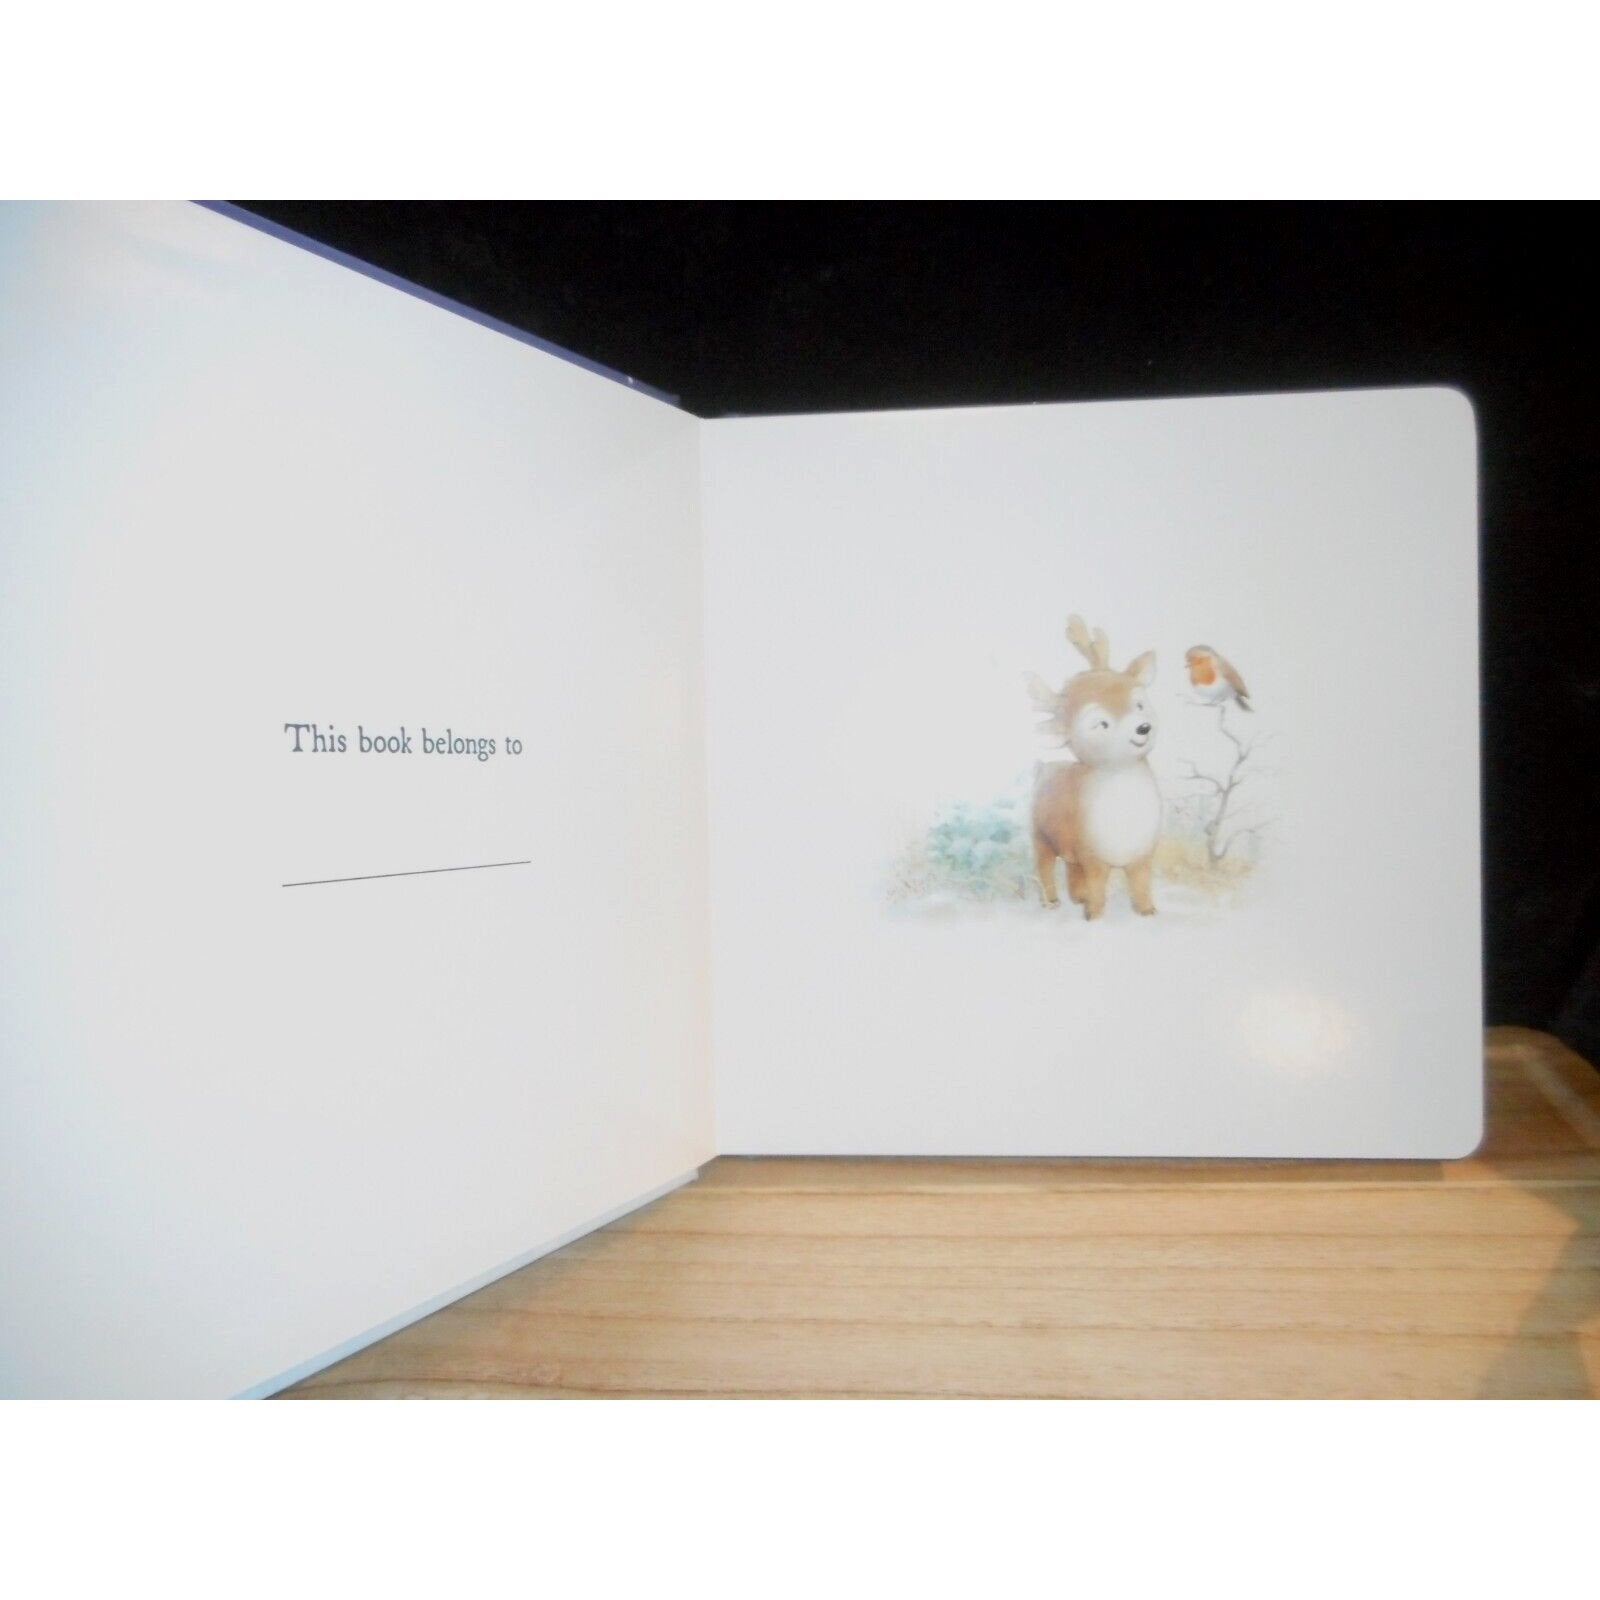 Mitzi Reindeer Dream Book